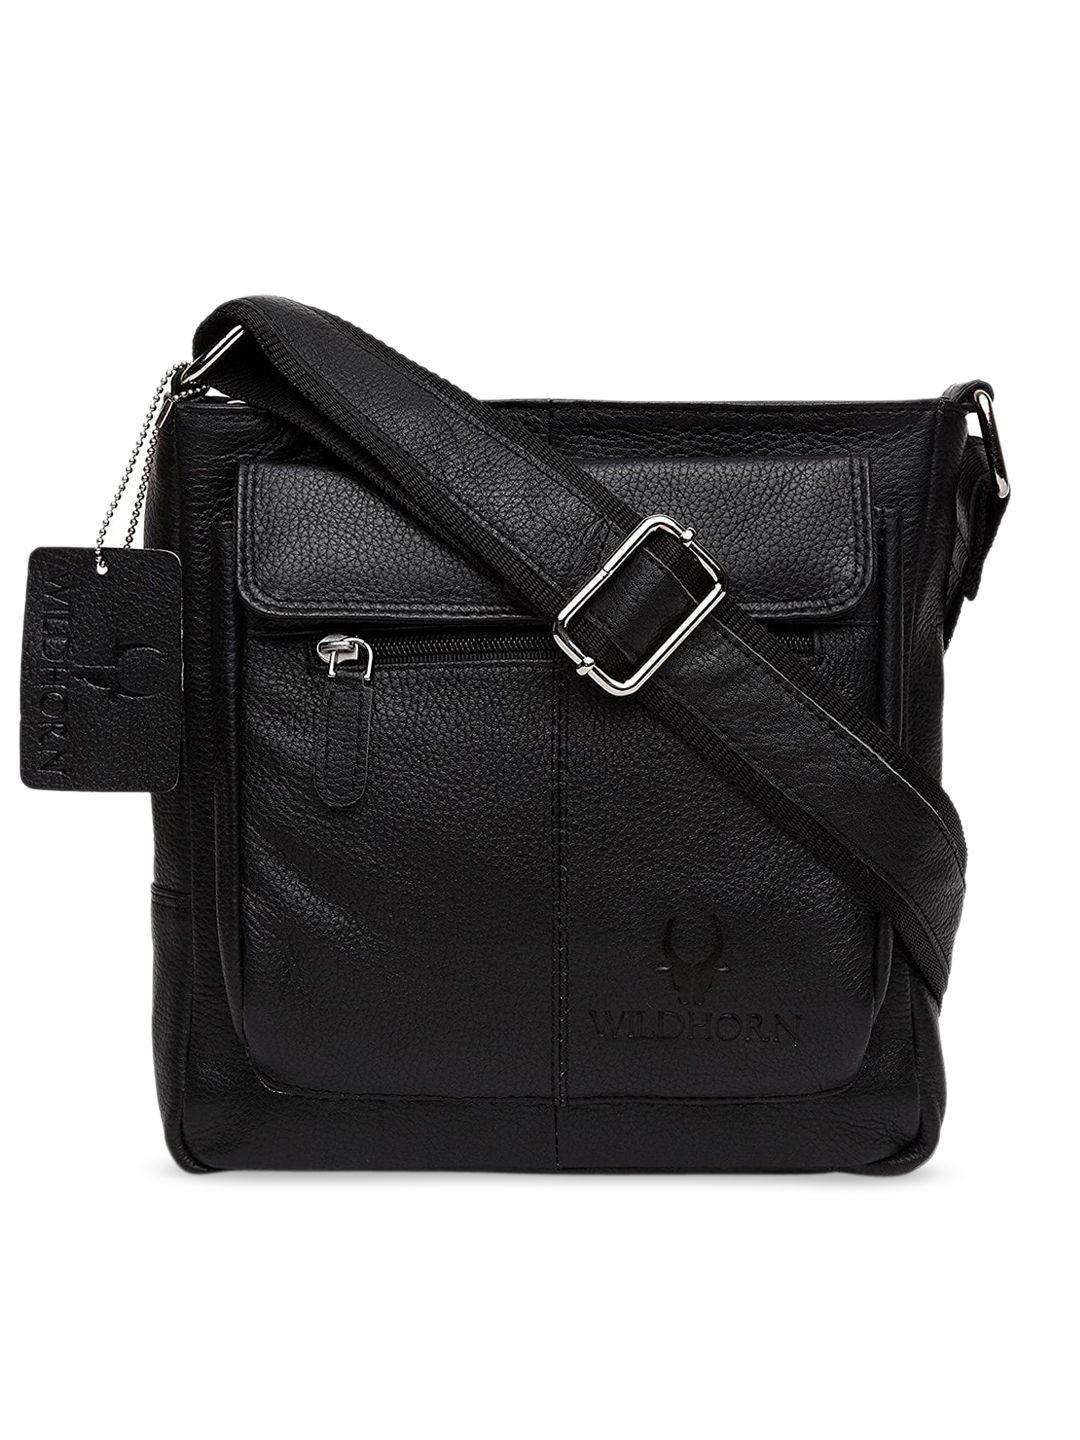 wildhorn men black solid genuine leather messenger bag